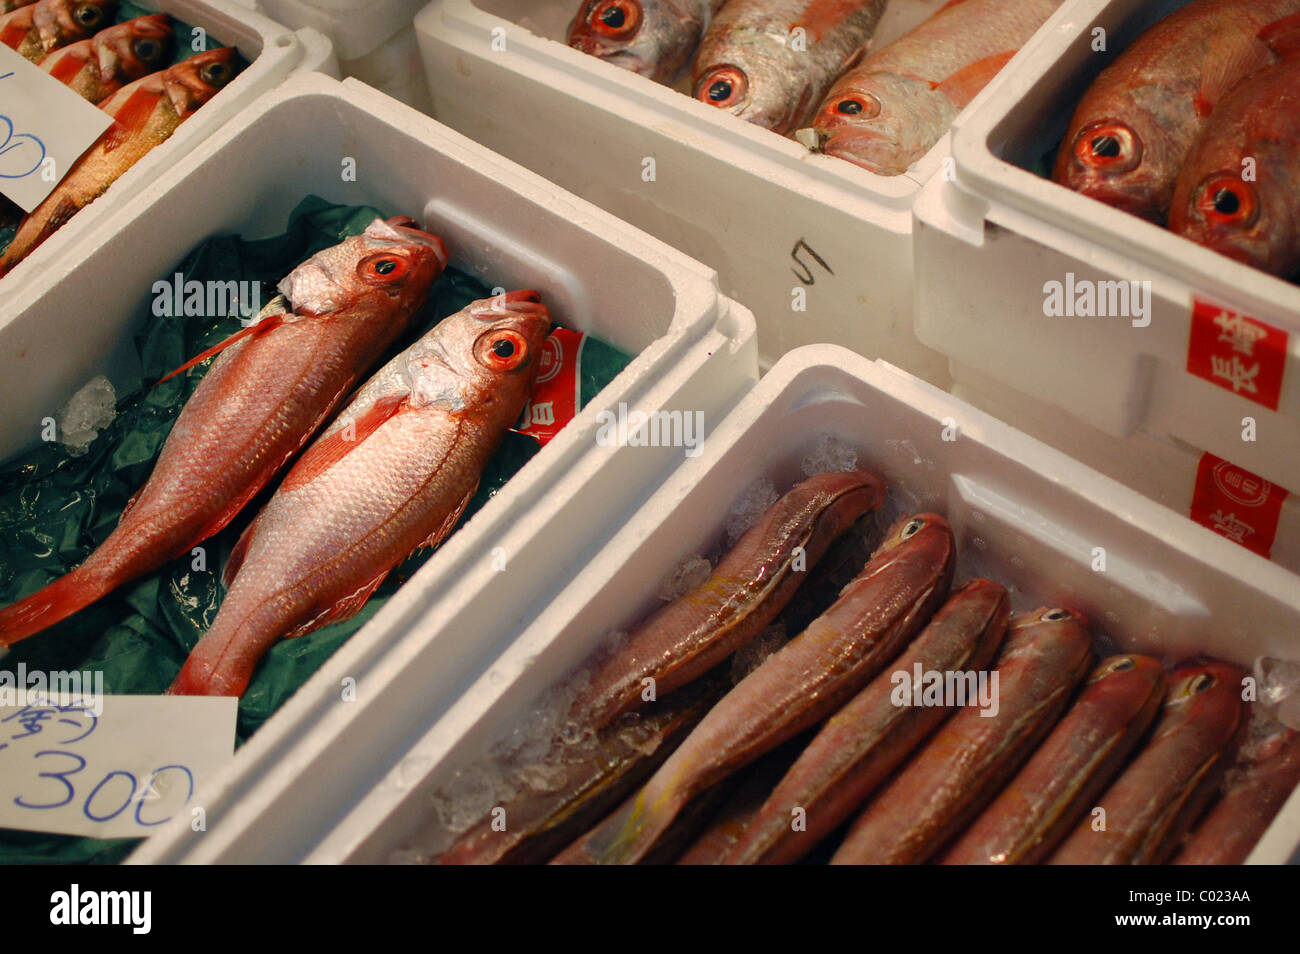 Crates of fish for sale at Tsukiji Fish Market, Tokyo, Japan Stock Photo